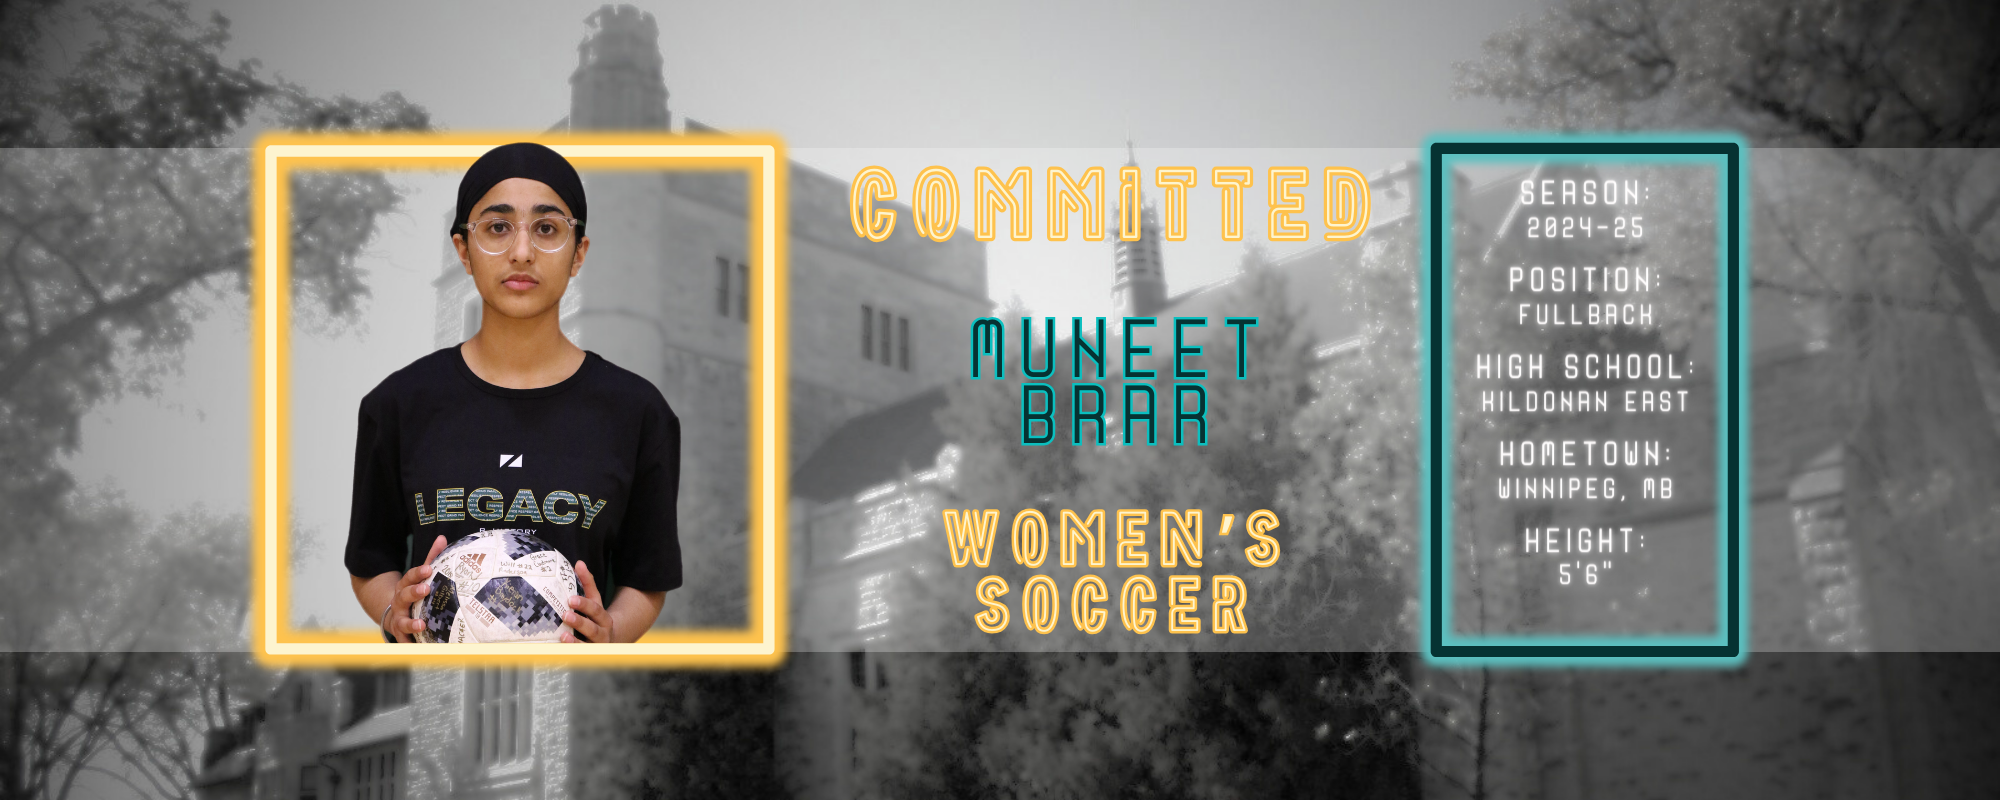 Muneet Brar Joins Blazers Women's Soccer Alongside Twin